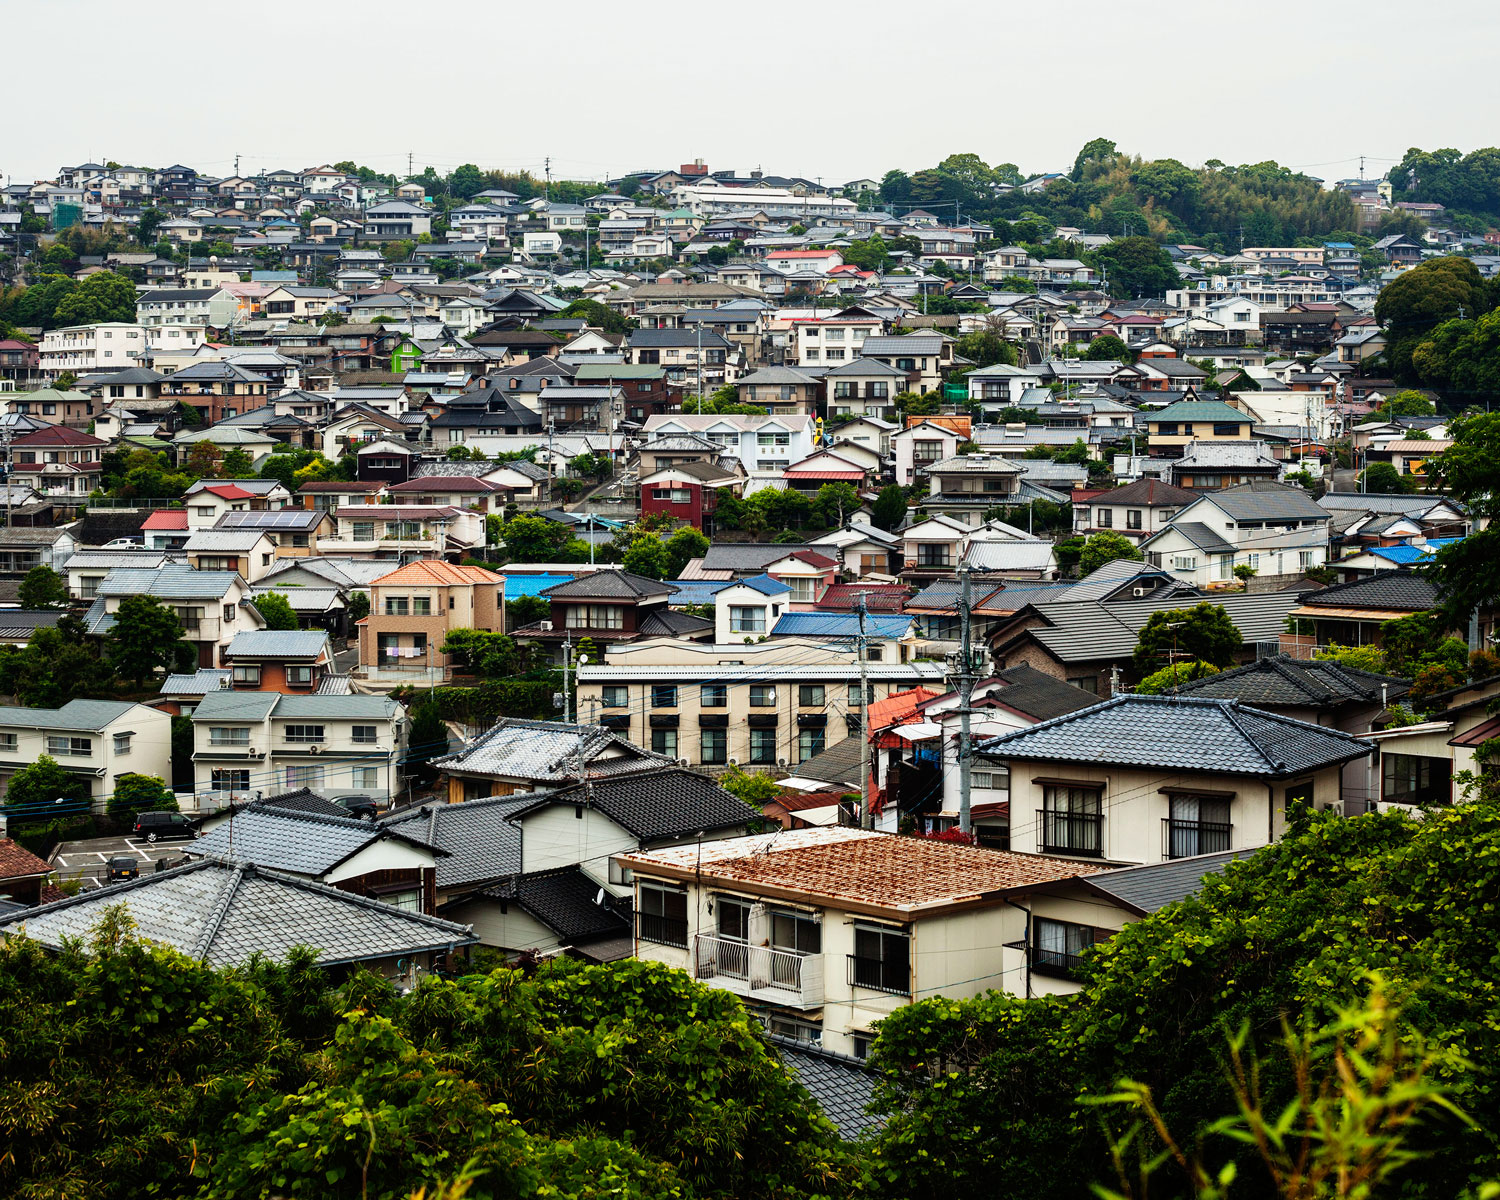   A bed town (Sasebo, Japan 2014)        